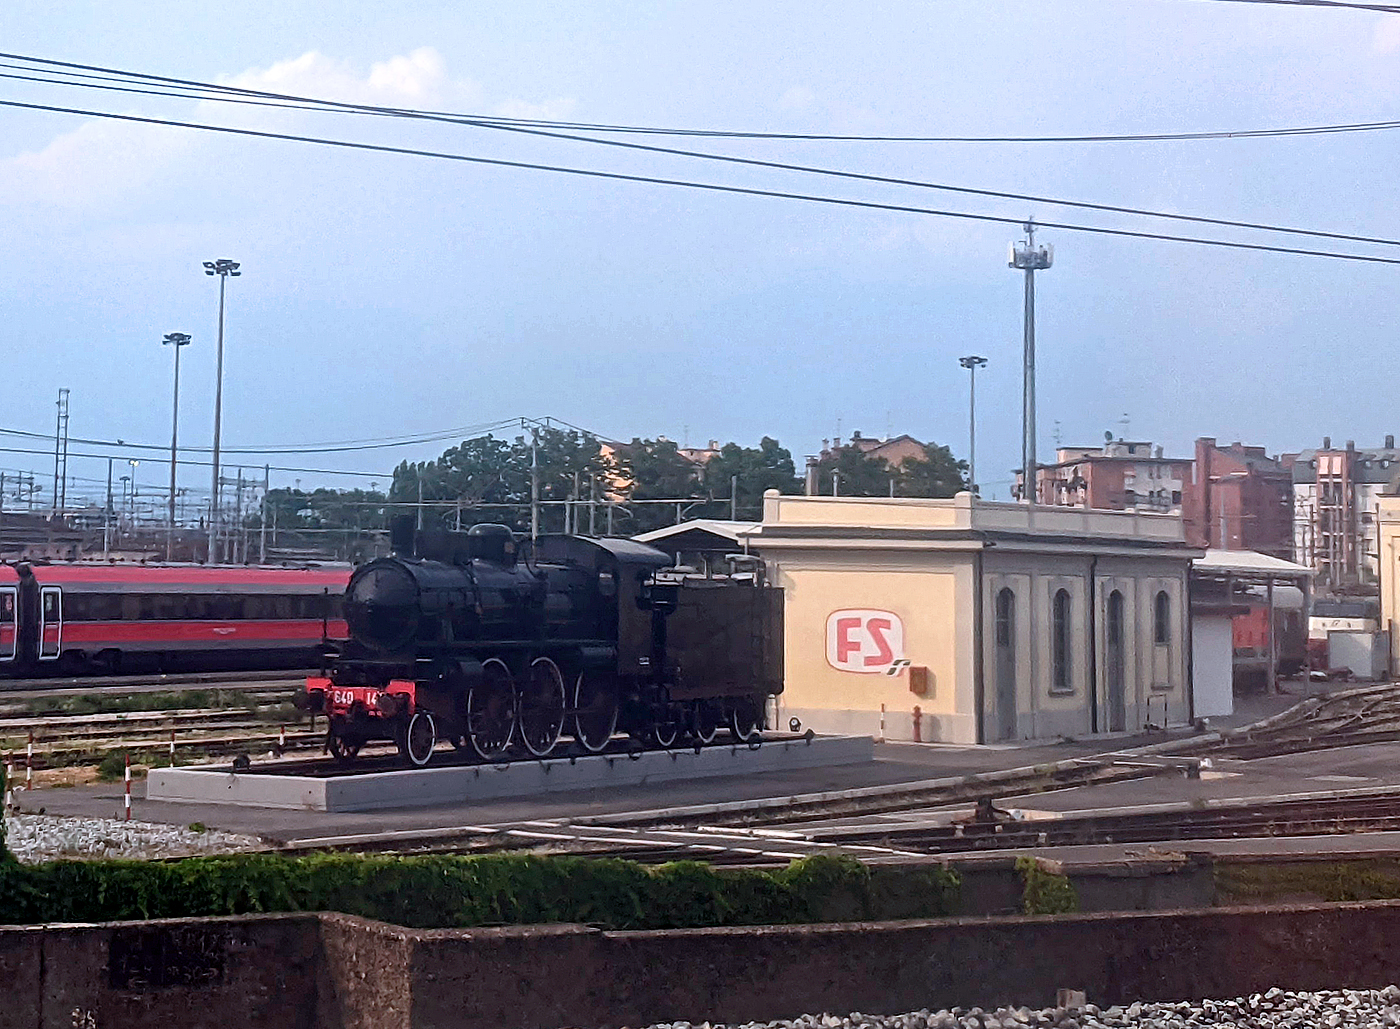 Die Schlepptender-Dampflok FS 640.148 als Denkmallok beim Bahnhof Milano Centrale (Squadra Rialzo di Milano Centrale) am 23.07.2022. Aufgenommen mit Smartphone aus einem Zug heraus.

Die Lok nach dem Ablauf der Fristen im Oktober 2018, wurde die Lok unter Denkmalschutz gestellt und hier aufgestellt.

TECHNISCH DATEN:
Spurweite:  1.435 mm (Normalspur)
Achsformel: 1’C h2 (1-3-0)
Länge über Puffer: 16.530 mm (Lok)  
Höchstgeschwindigkeit:100 km/h
Indizierte Leistung: 589 kW bei 75 km/h
Treibraddurchmesser: 	1.850 mm
Zylinderanzahl: 	2
Zylinderdurchmesser: 	540 mm
Kolbenhub: 700 mm
Kesselüberdruck: 12 bar
Rostfläche: 2,8 m²
Tender: 3 T 15
Wasservorrat: 15 m³
Brennstoffvorrat: 6 t Kohle